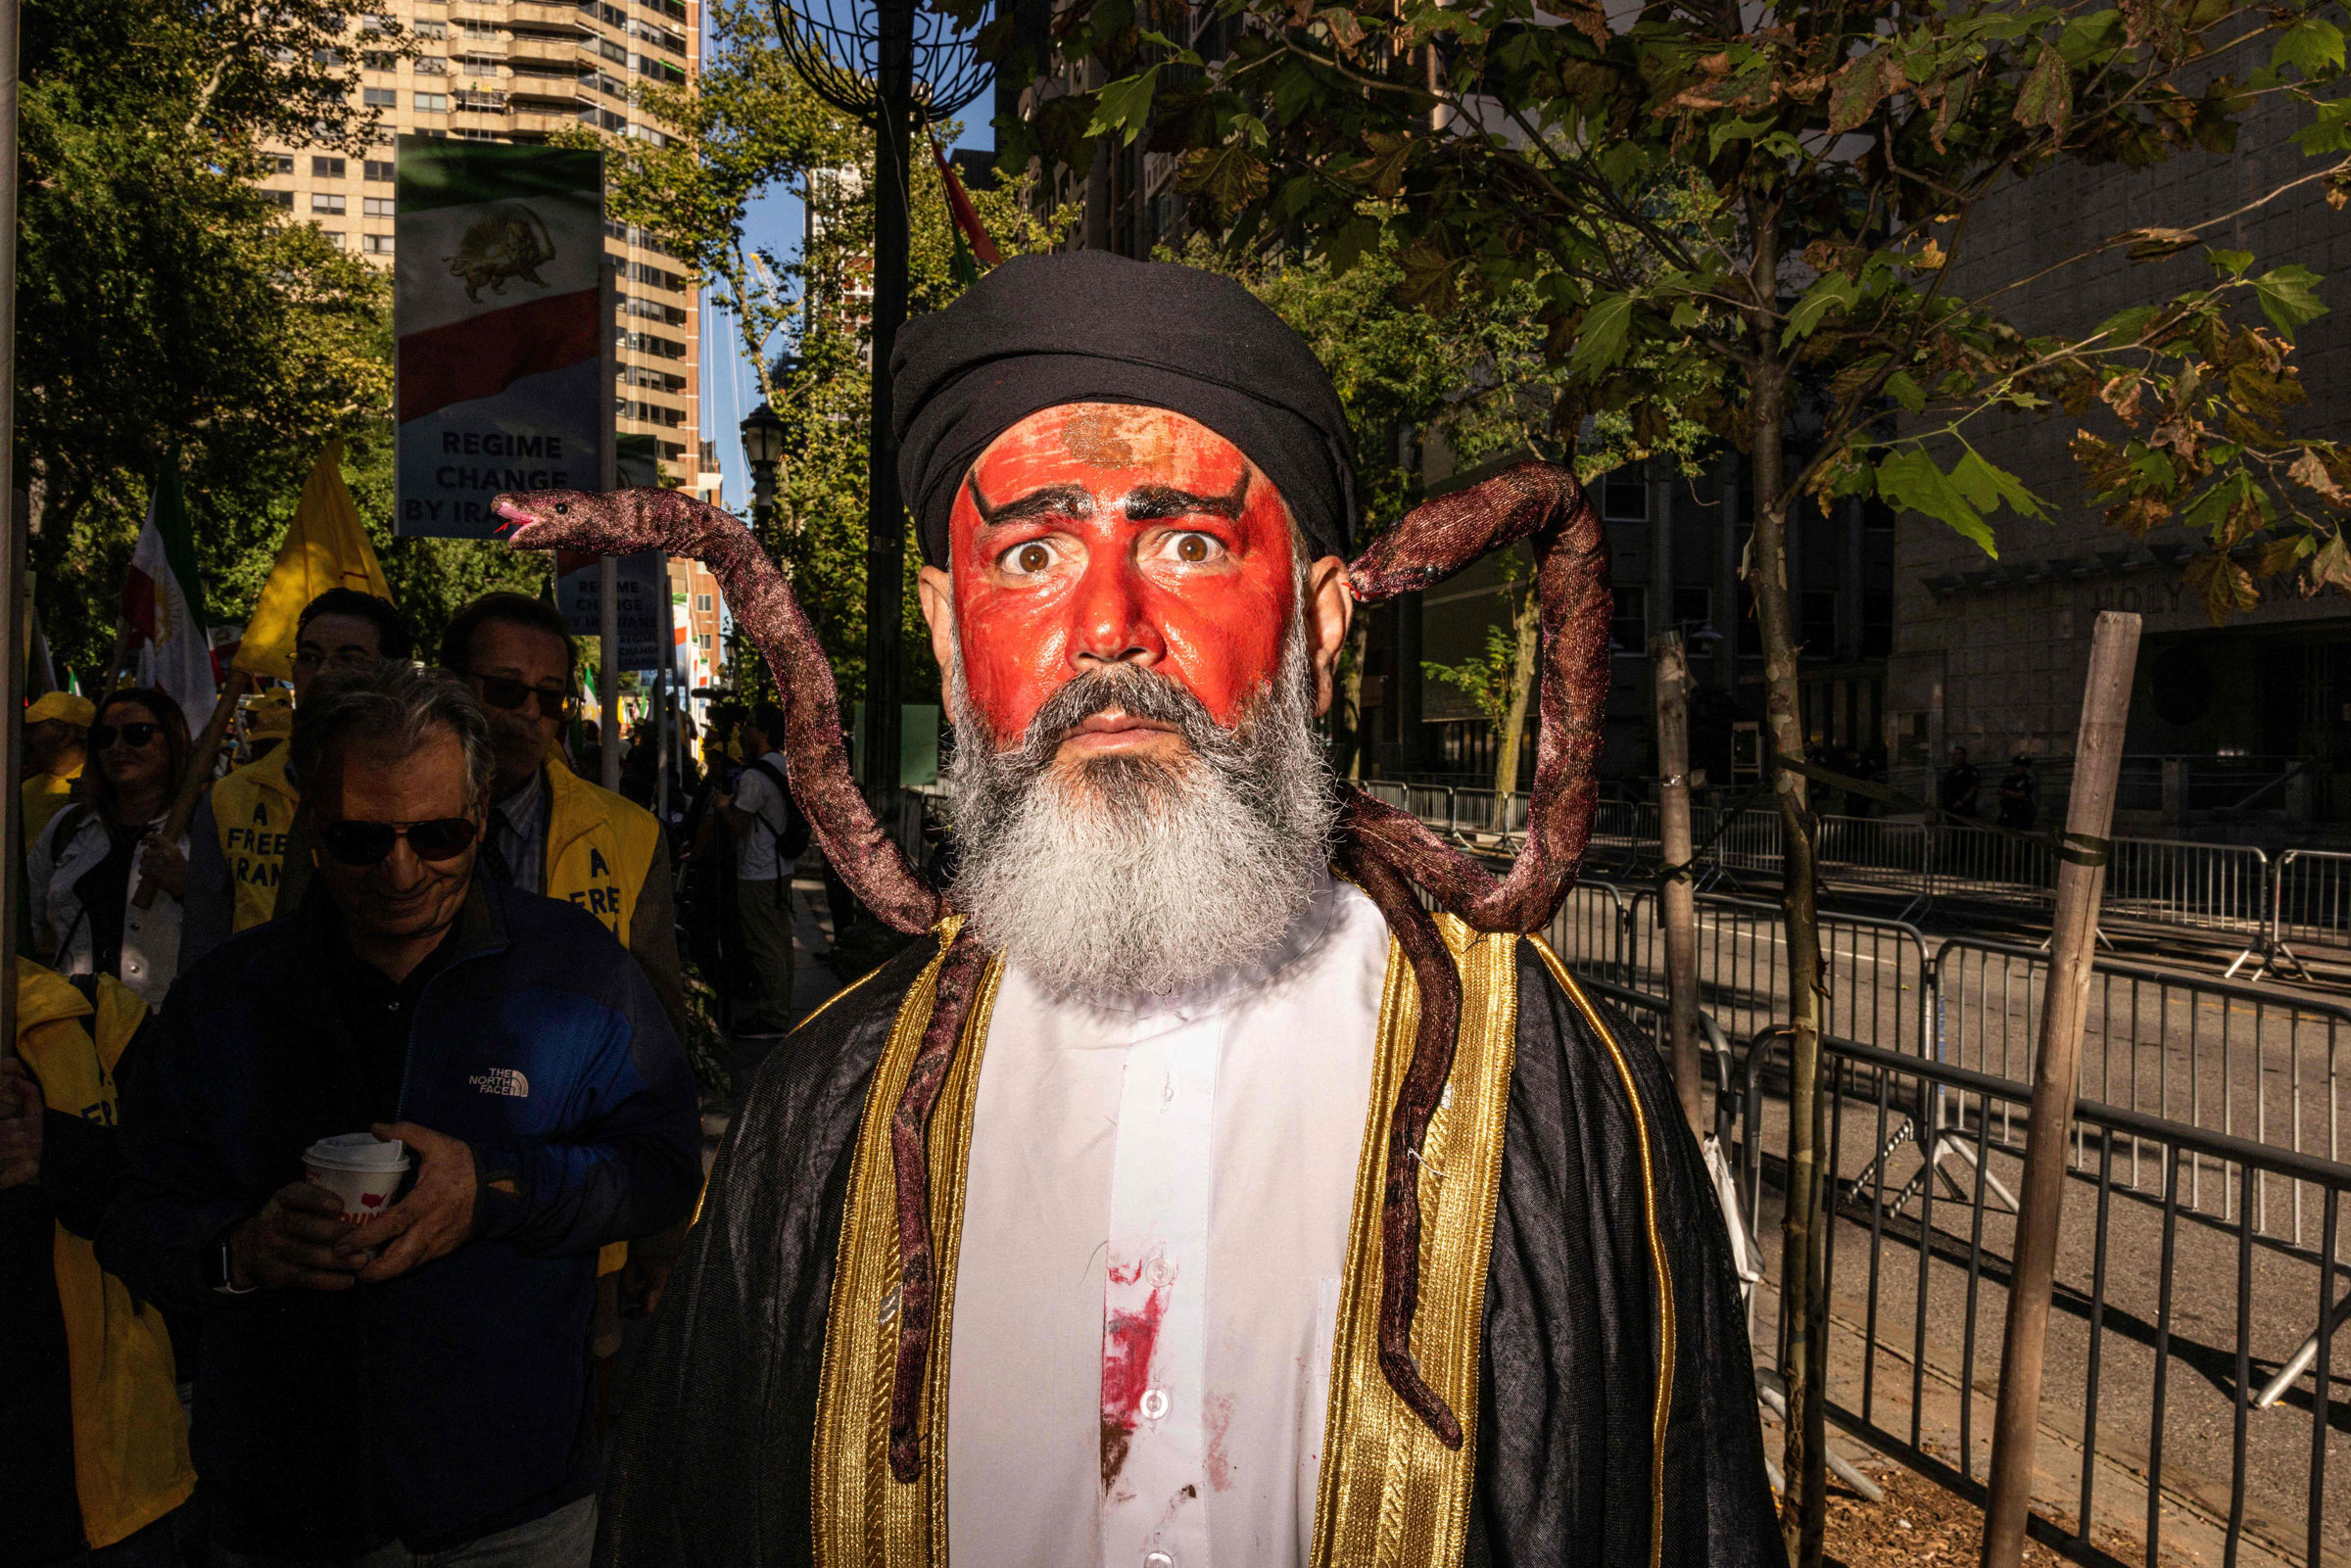 <b>New York, NY </b>İran Cumhurbaşkanı Ebrahim Rasi gibi giyinmiş, omuzlarında yılanlar olan kanlar içinde bir kişi, 21 Eylül 2022’de New York’ta düzenlenen bir miting sırasında İran Cumhurbaşkanı Ebrahim Raisi’yi protesto eden bir protestoya katıldı, Birleşmiş Milletler Genel Kurulu’nun 77. oturumu sırasında.  (Alex Kent—AFP/Getty Images)” class=”fix-layout-shift”/></source></source></source></source></source></picture></figure>
<div class=